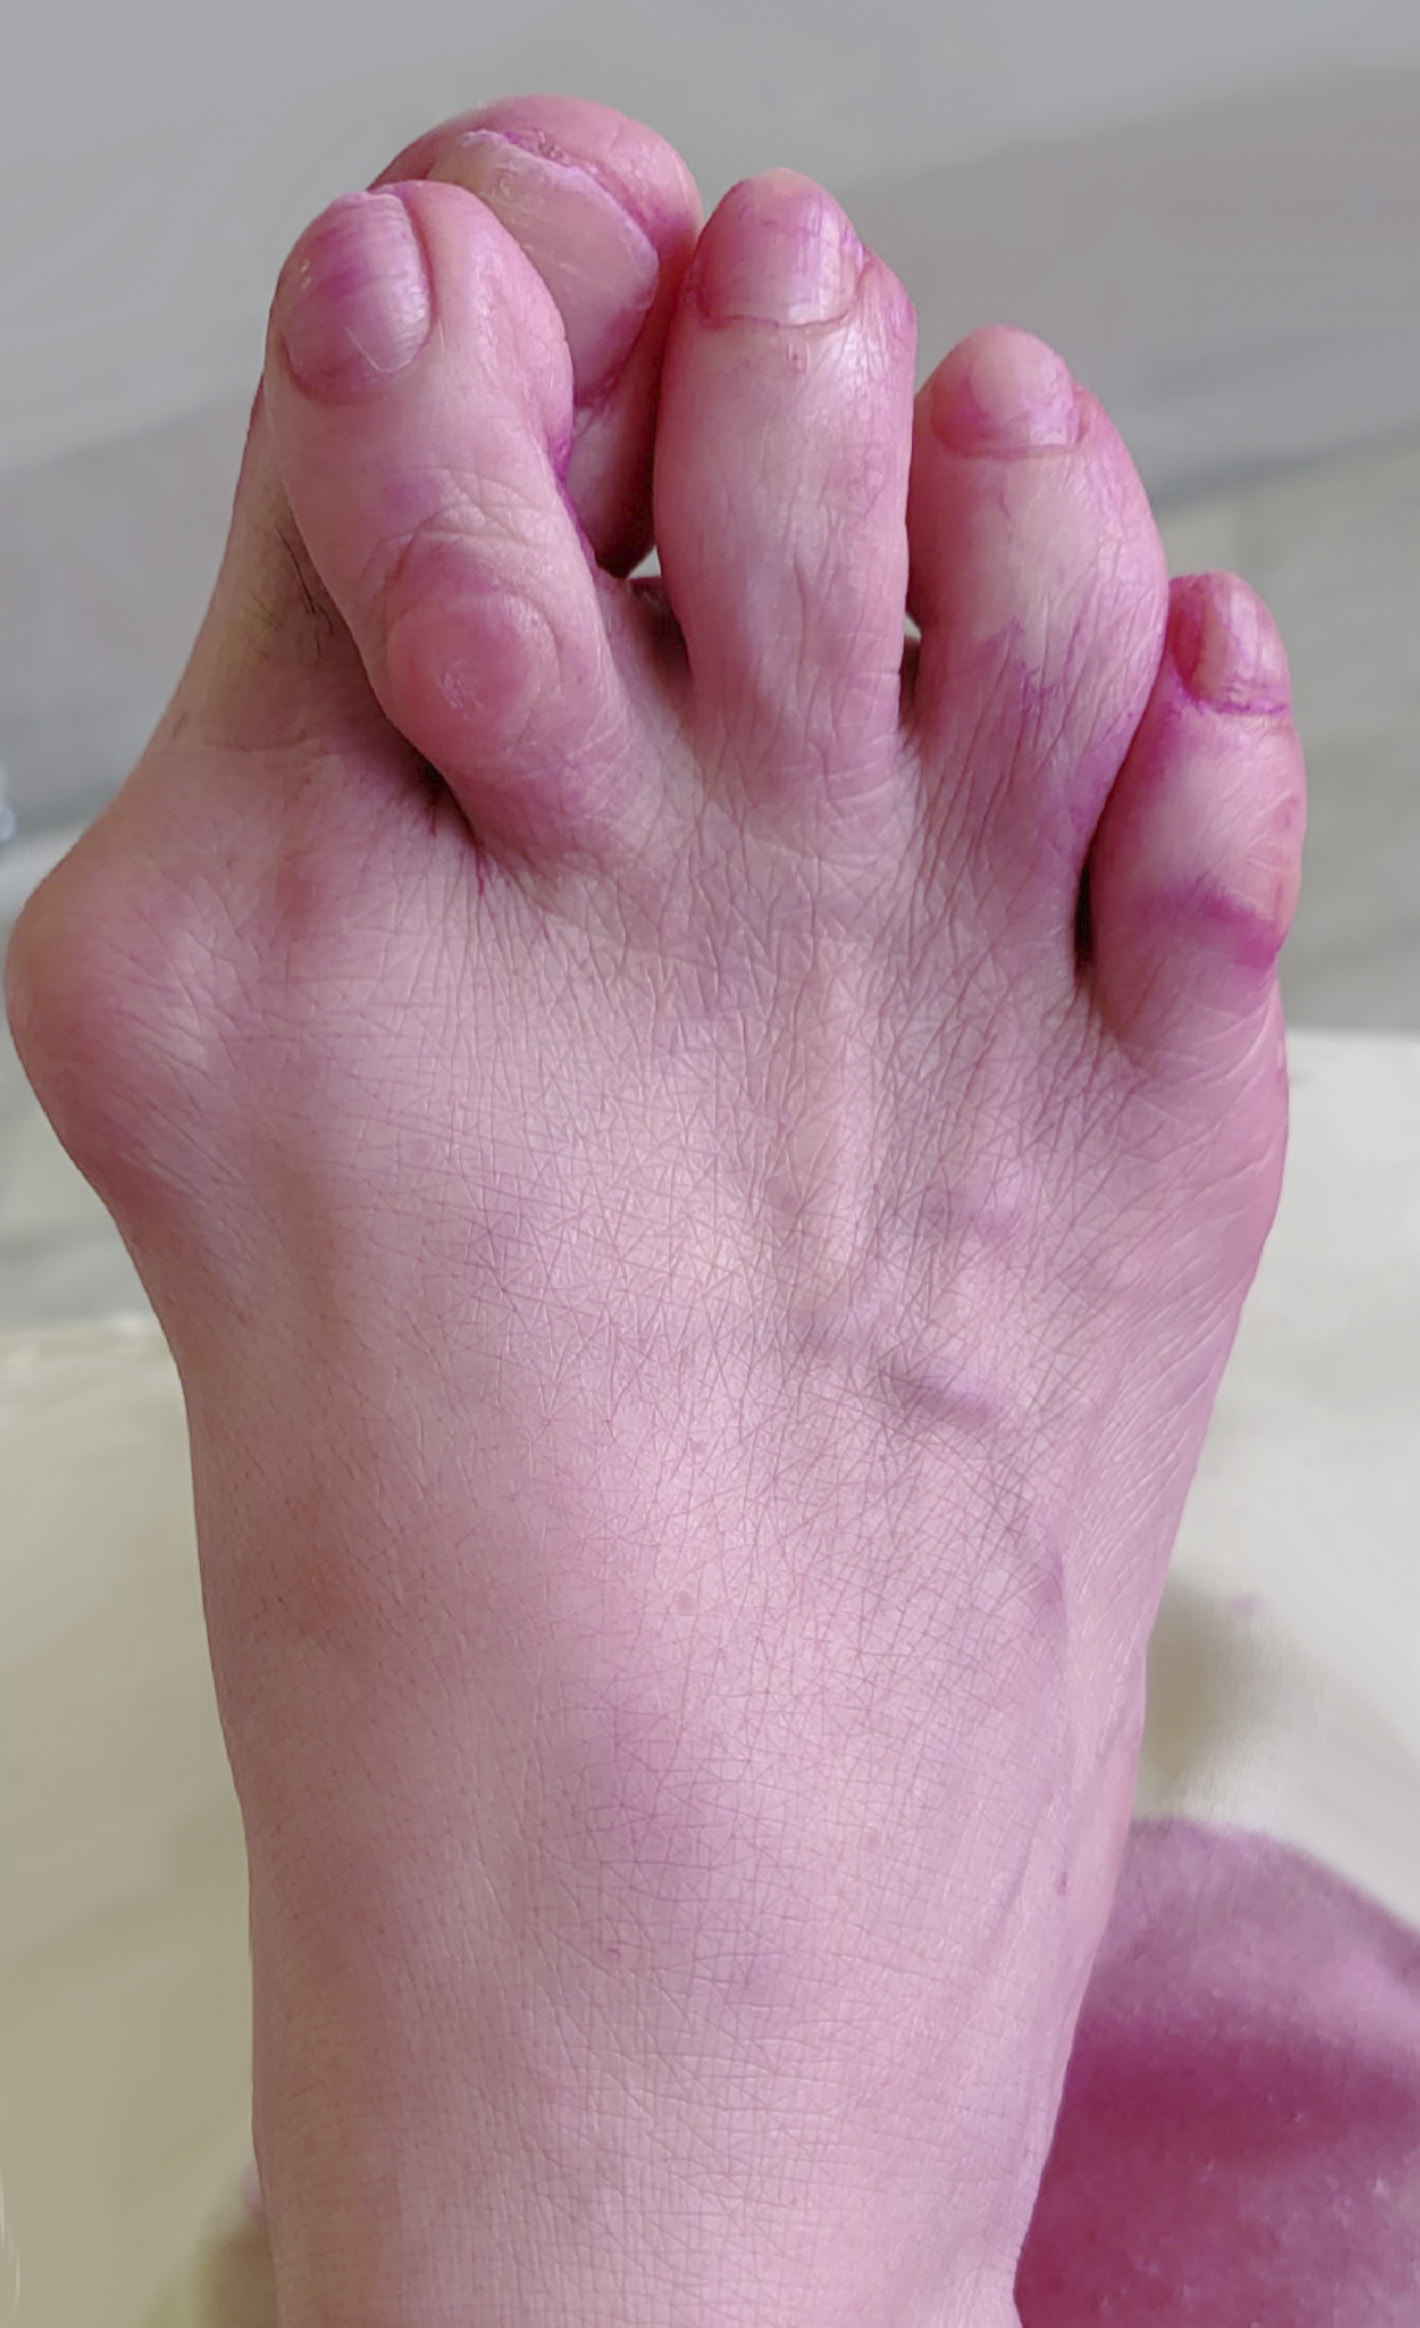 Вальгусная деформация стопы и молоткообразная деформация пальцев до операции